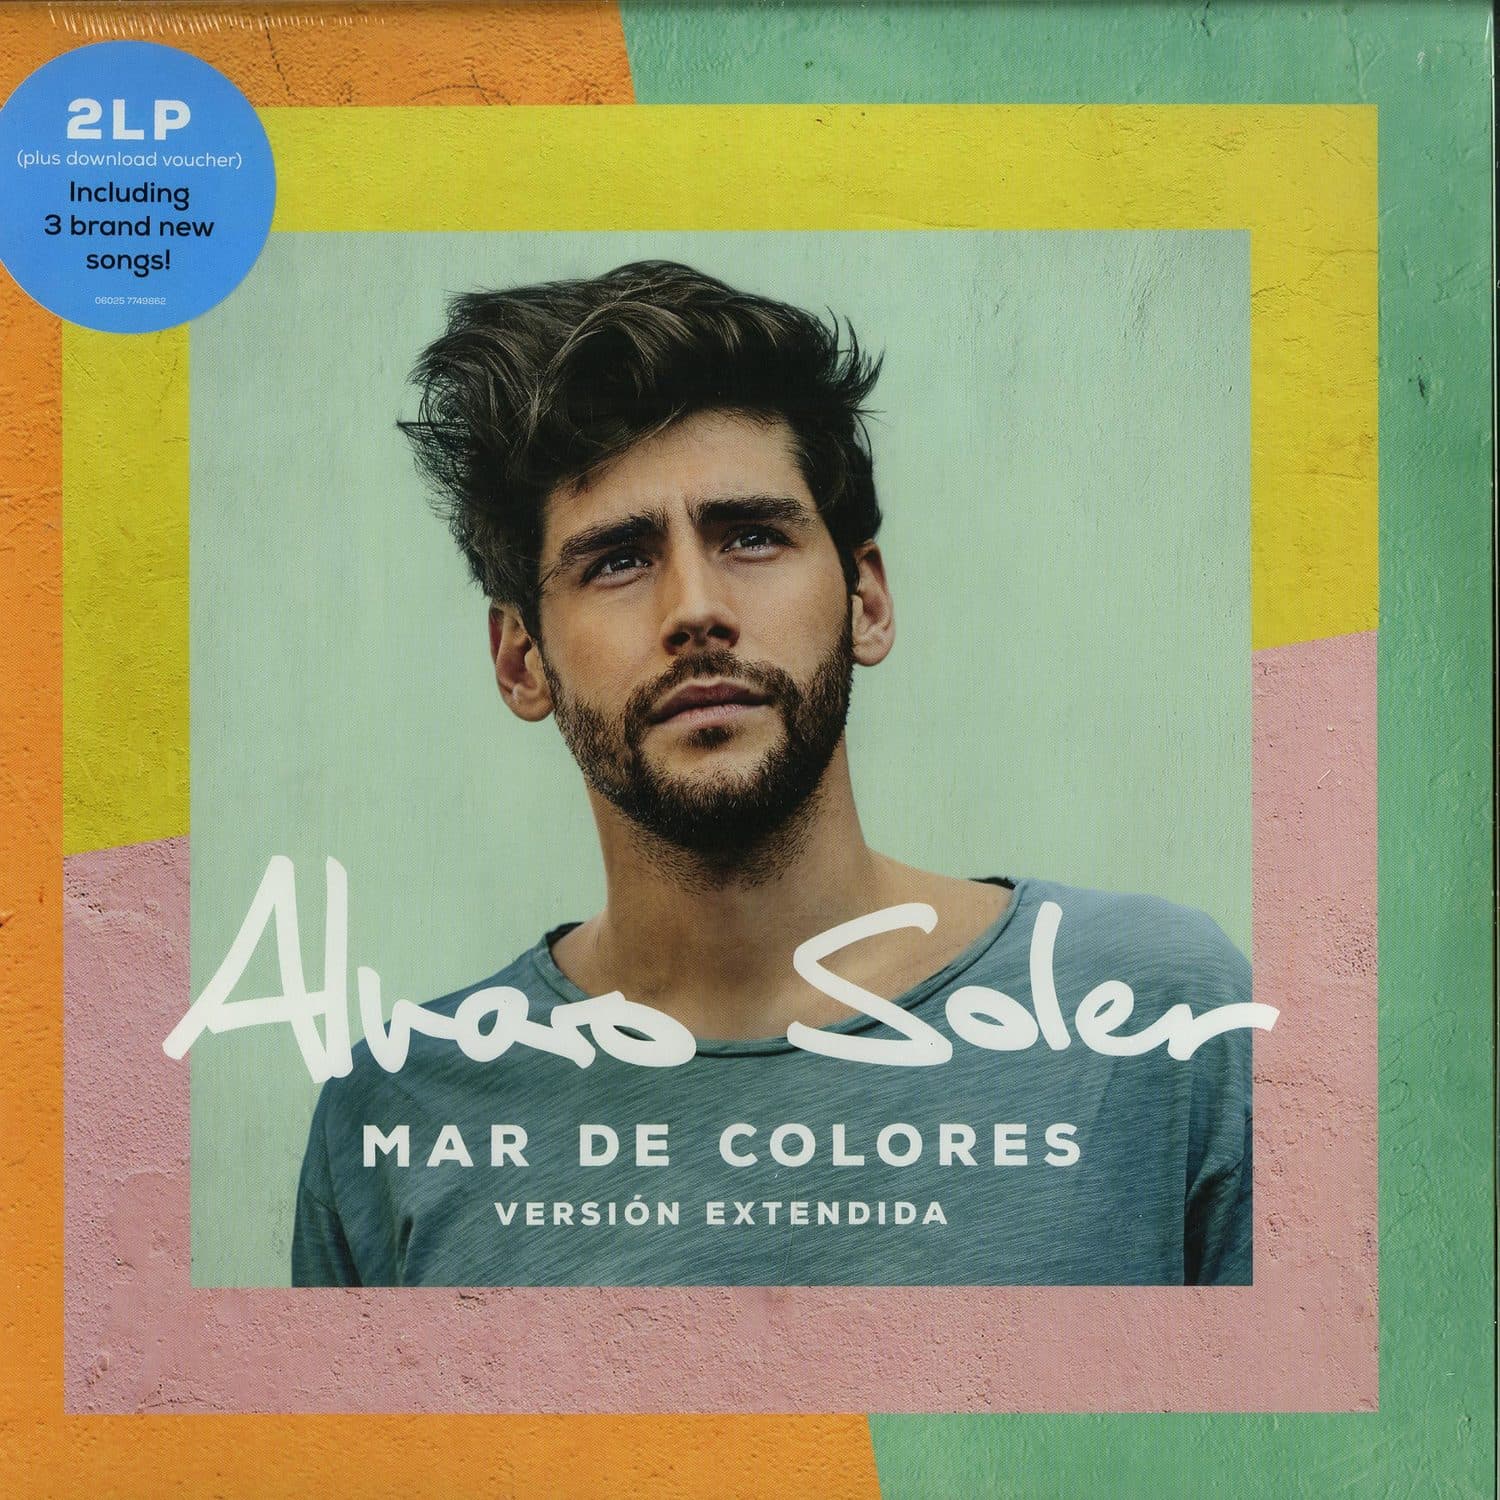 Alvaro Soler - MAR DE COLORES 